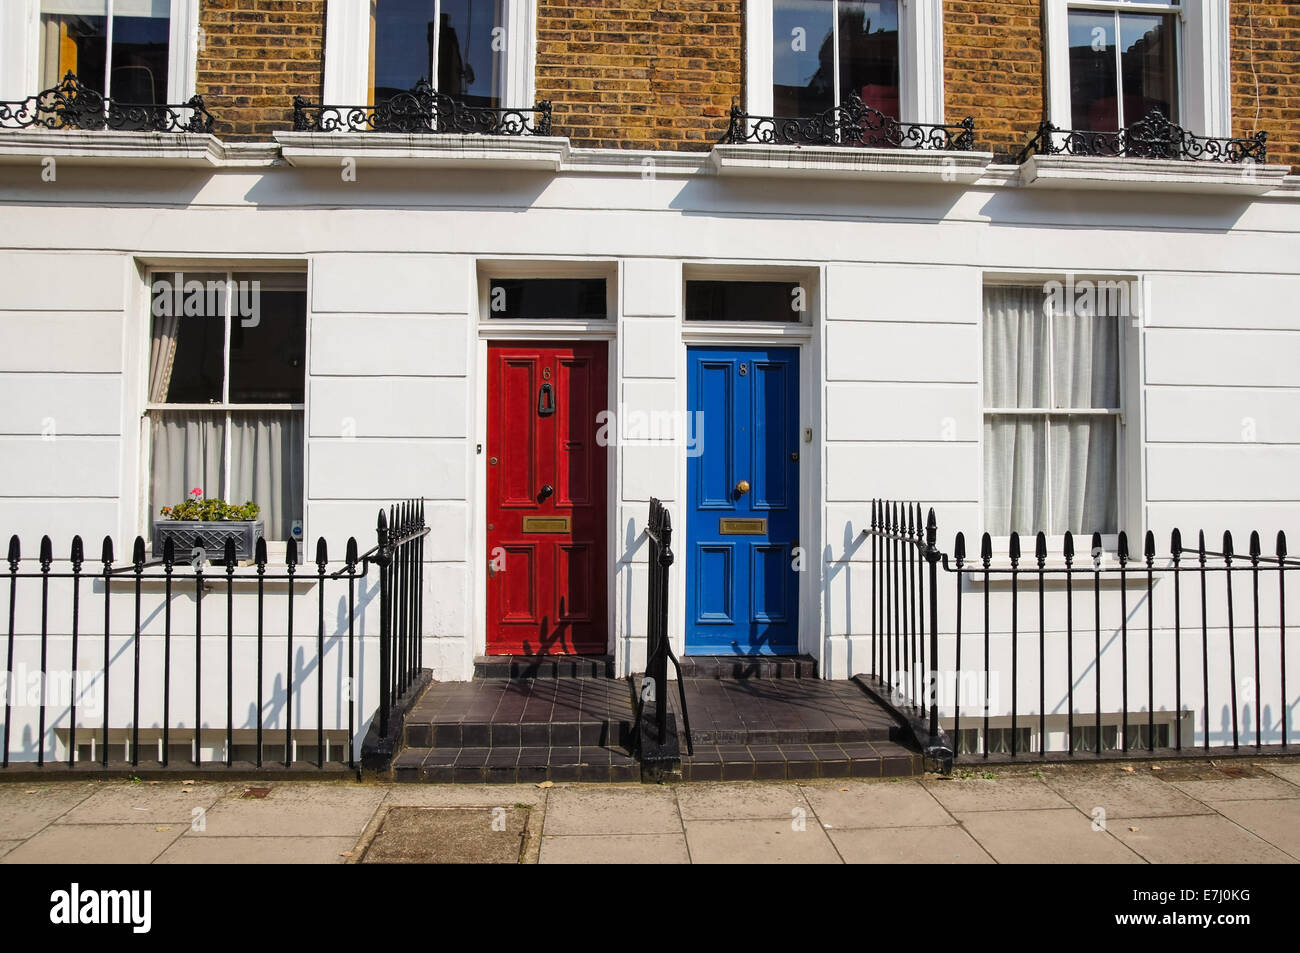 Portes de façade victorienne classique de maison mitoyenne à Londres Angleterre Royaume-Uni Banque D'Images